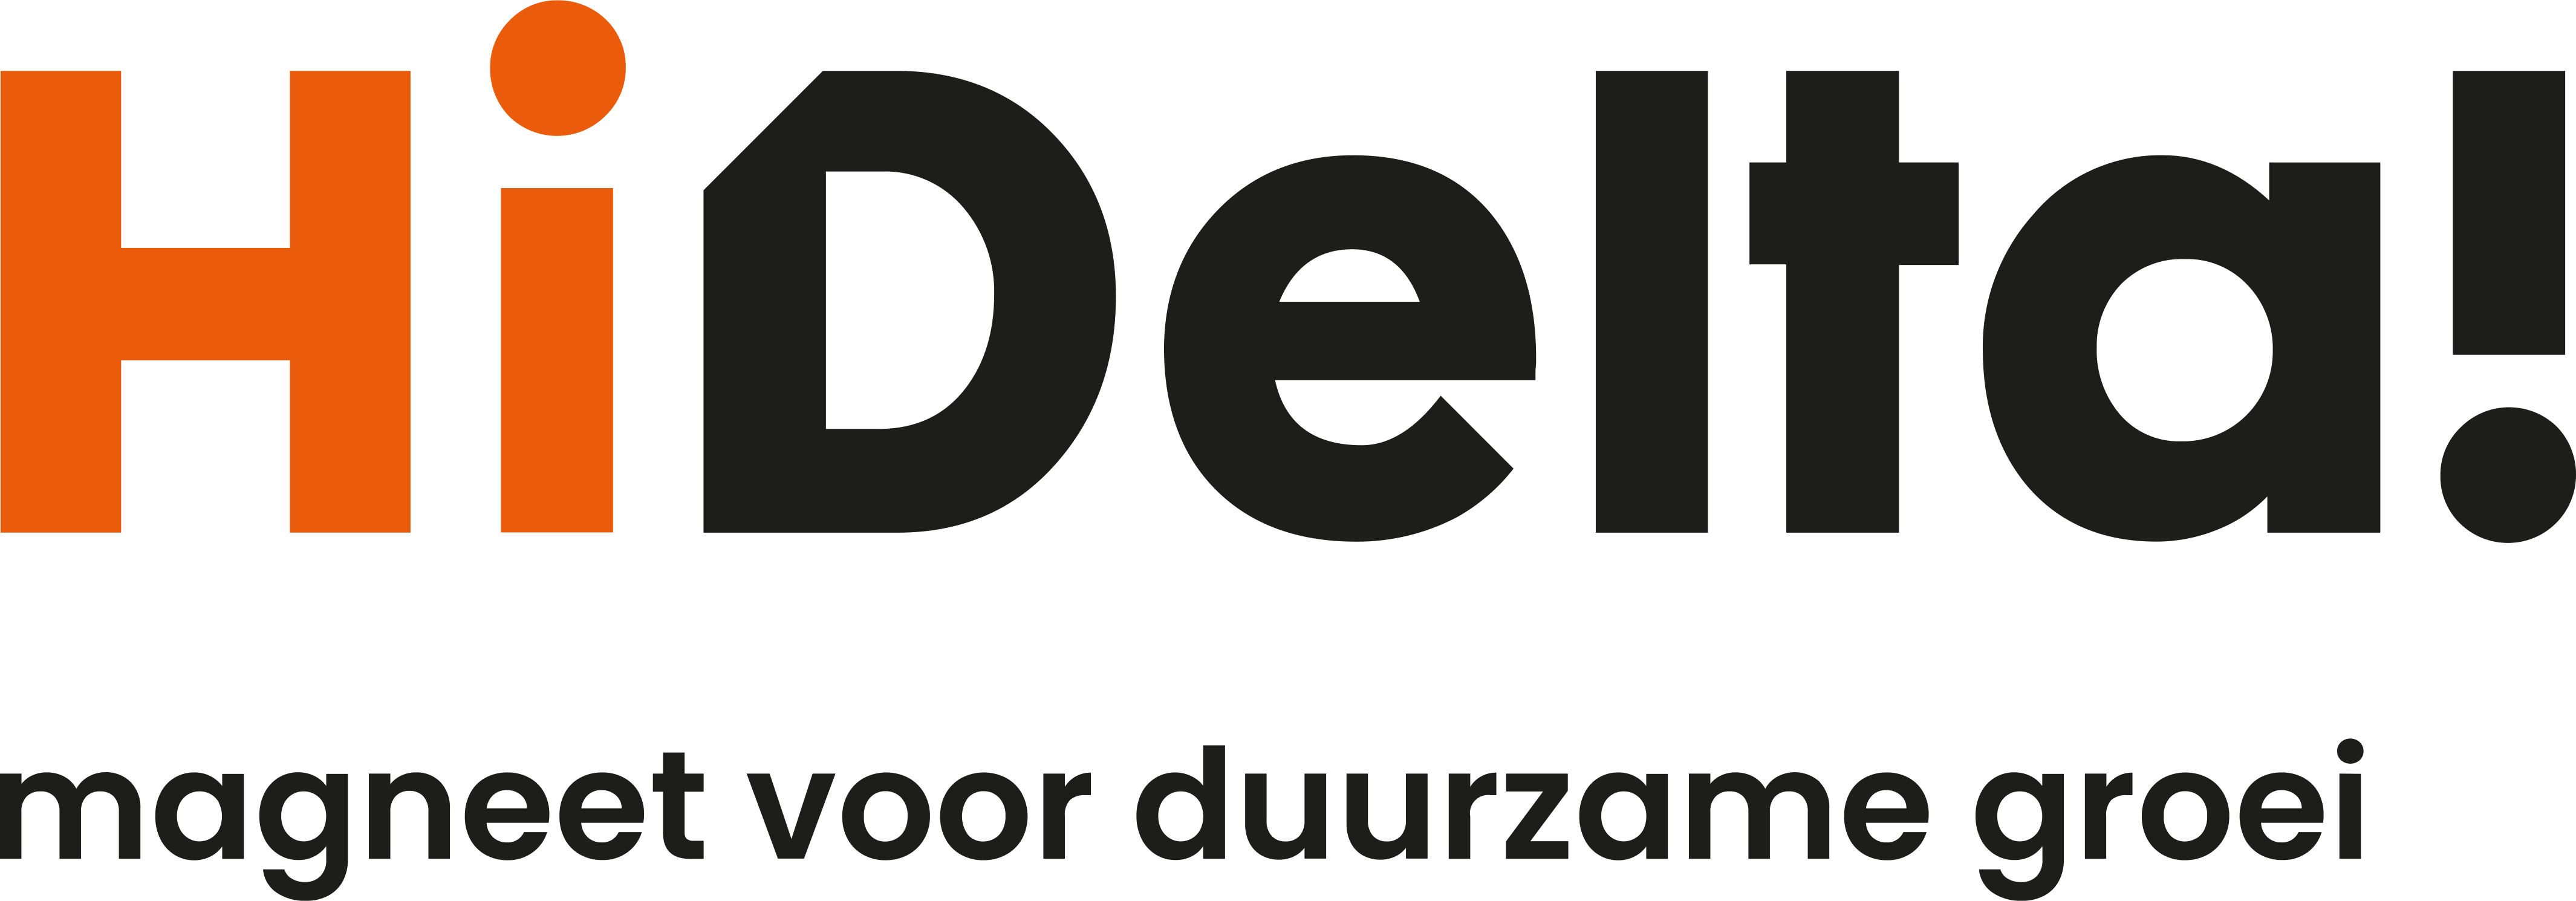 logo_hi-delta